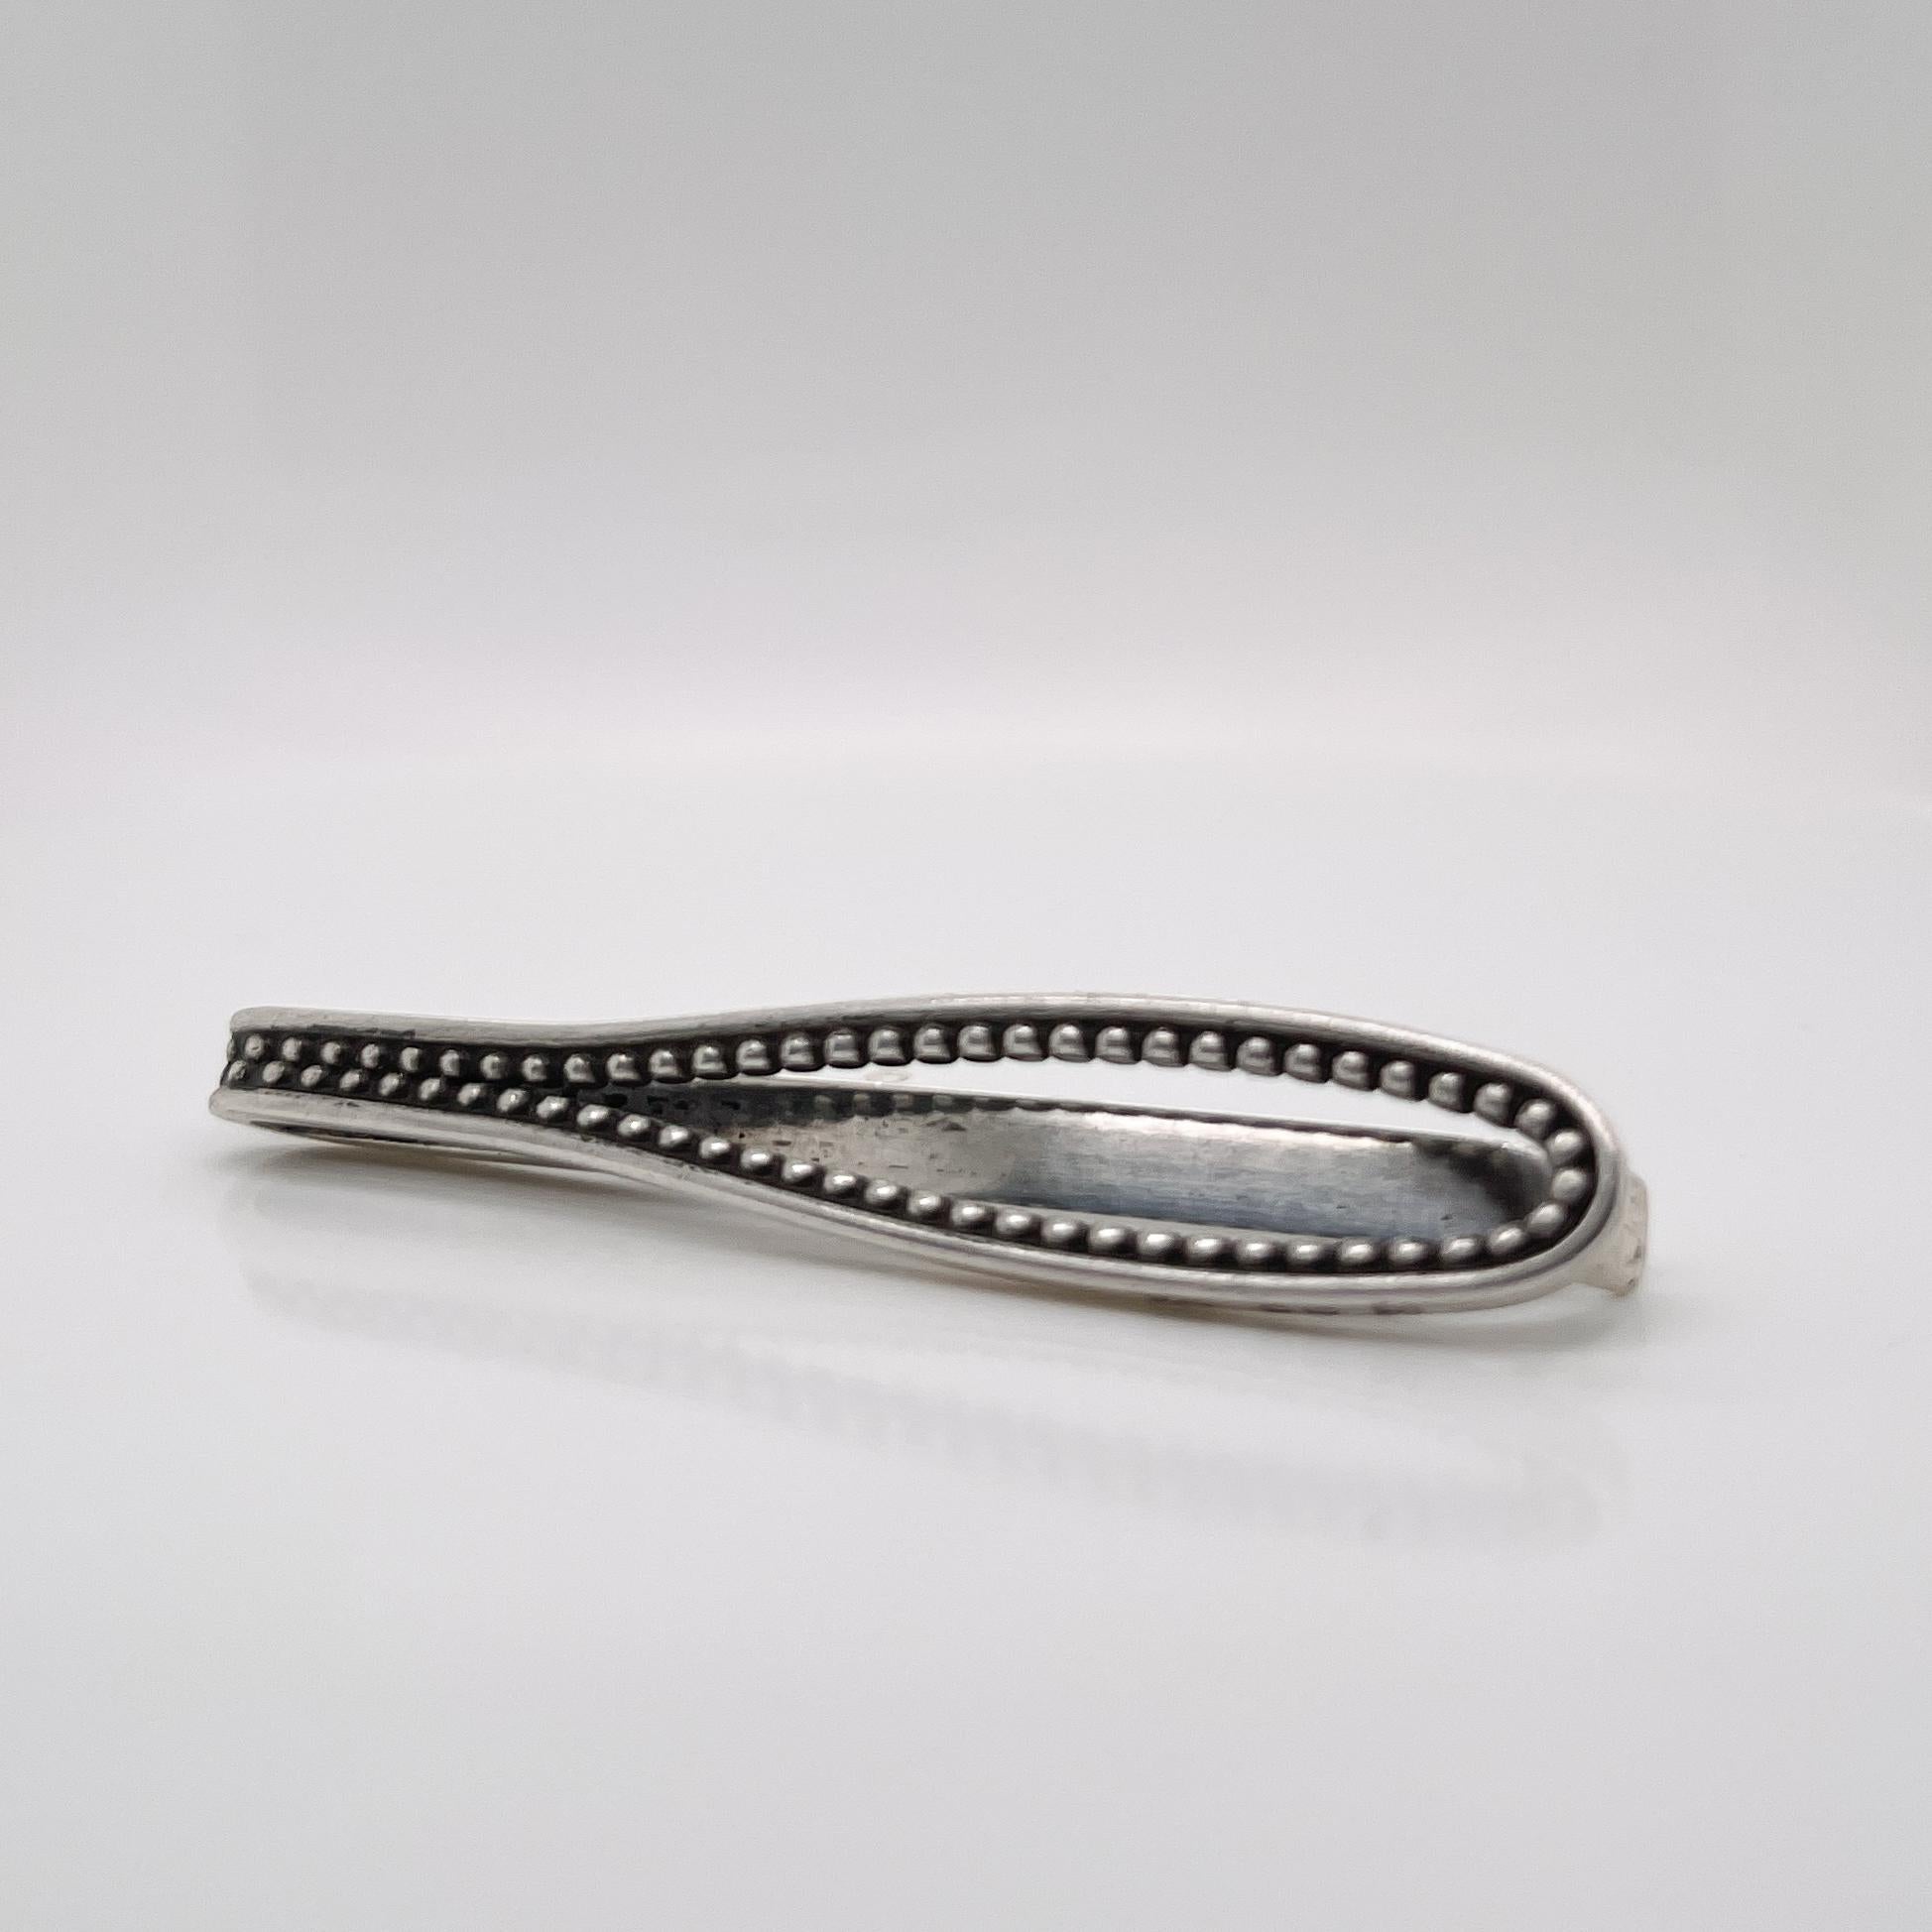 Eine sehr schöne Krawattenklammer oder Geldklammer aus Sterlingsilber von Georg Jensen.

Mit ovalem 